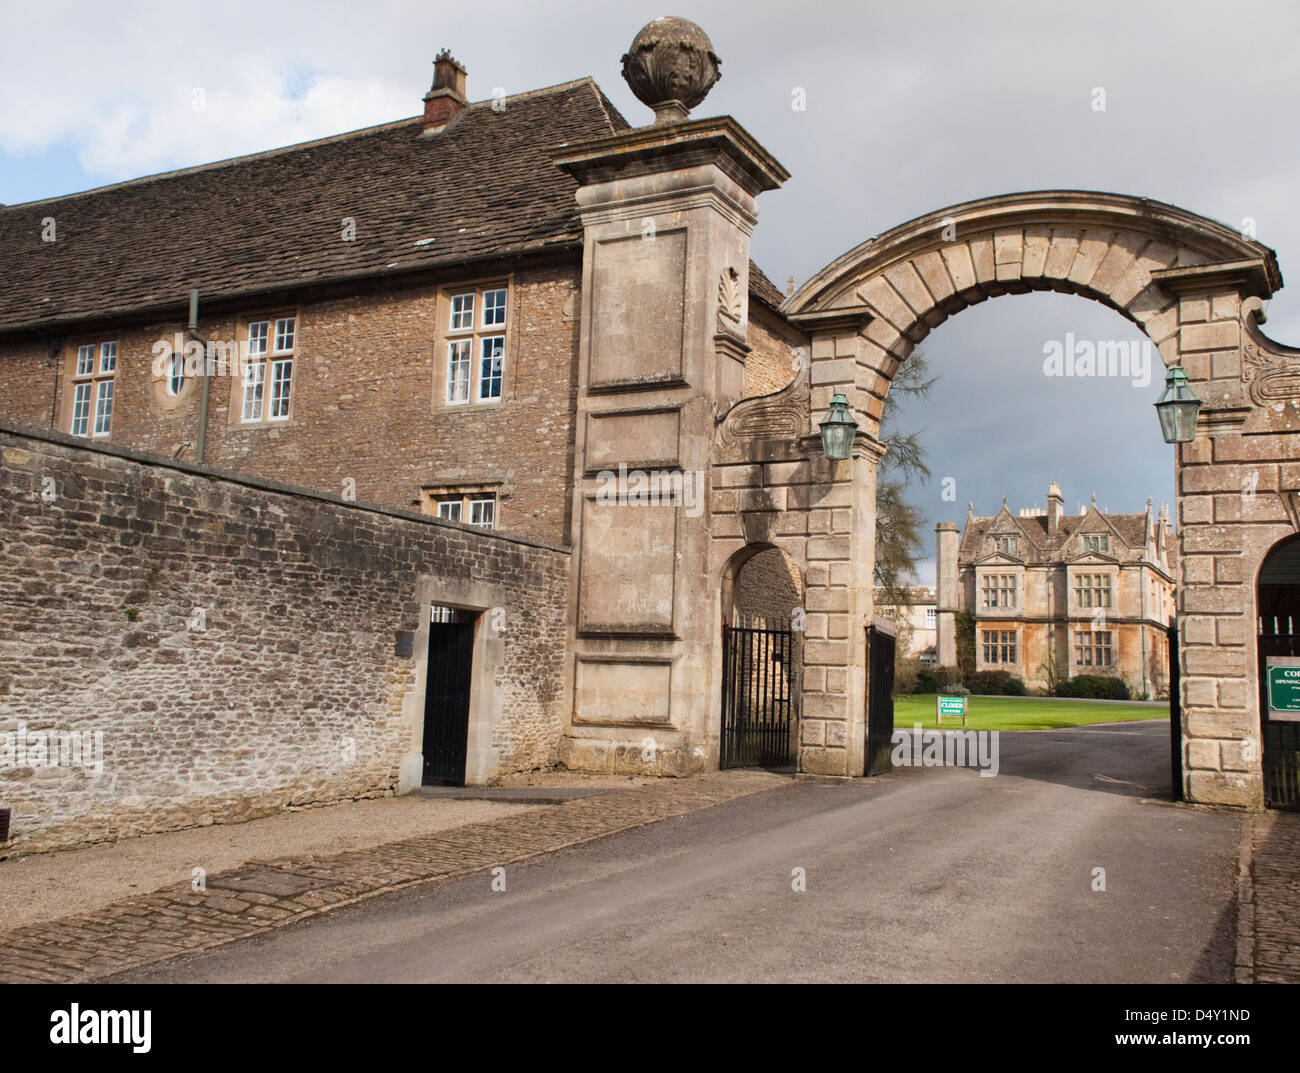 The Entrance to Corsham Court, Corsham Wiltshire England UK Stock Photo